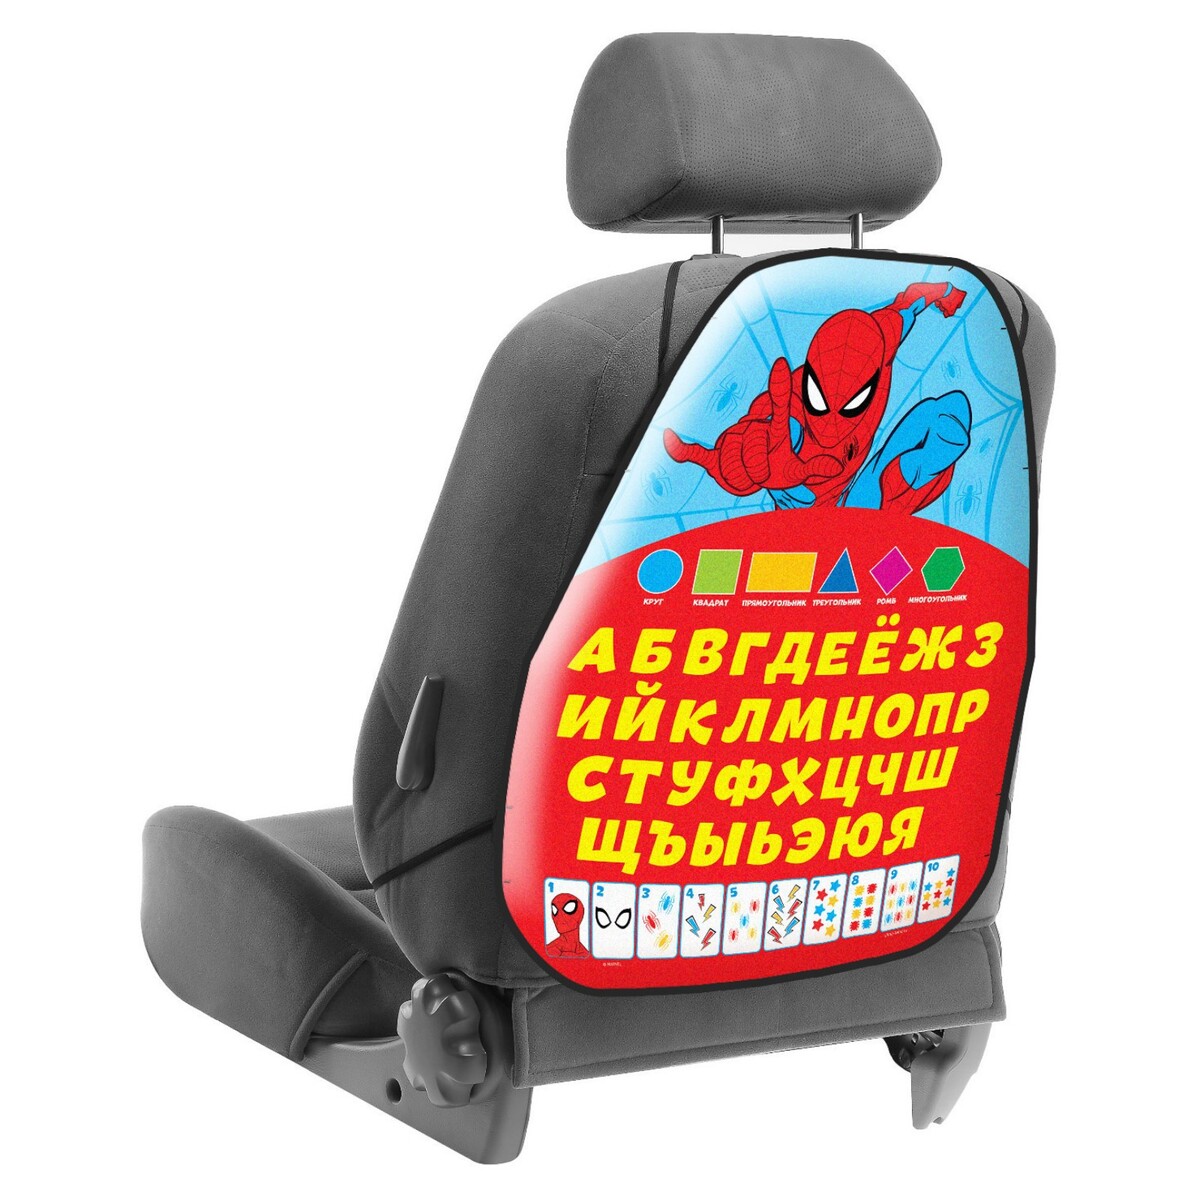 Незапинайка на автомобильное кресло, массажное кресло victoryfit m58